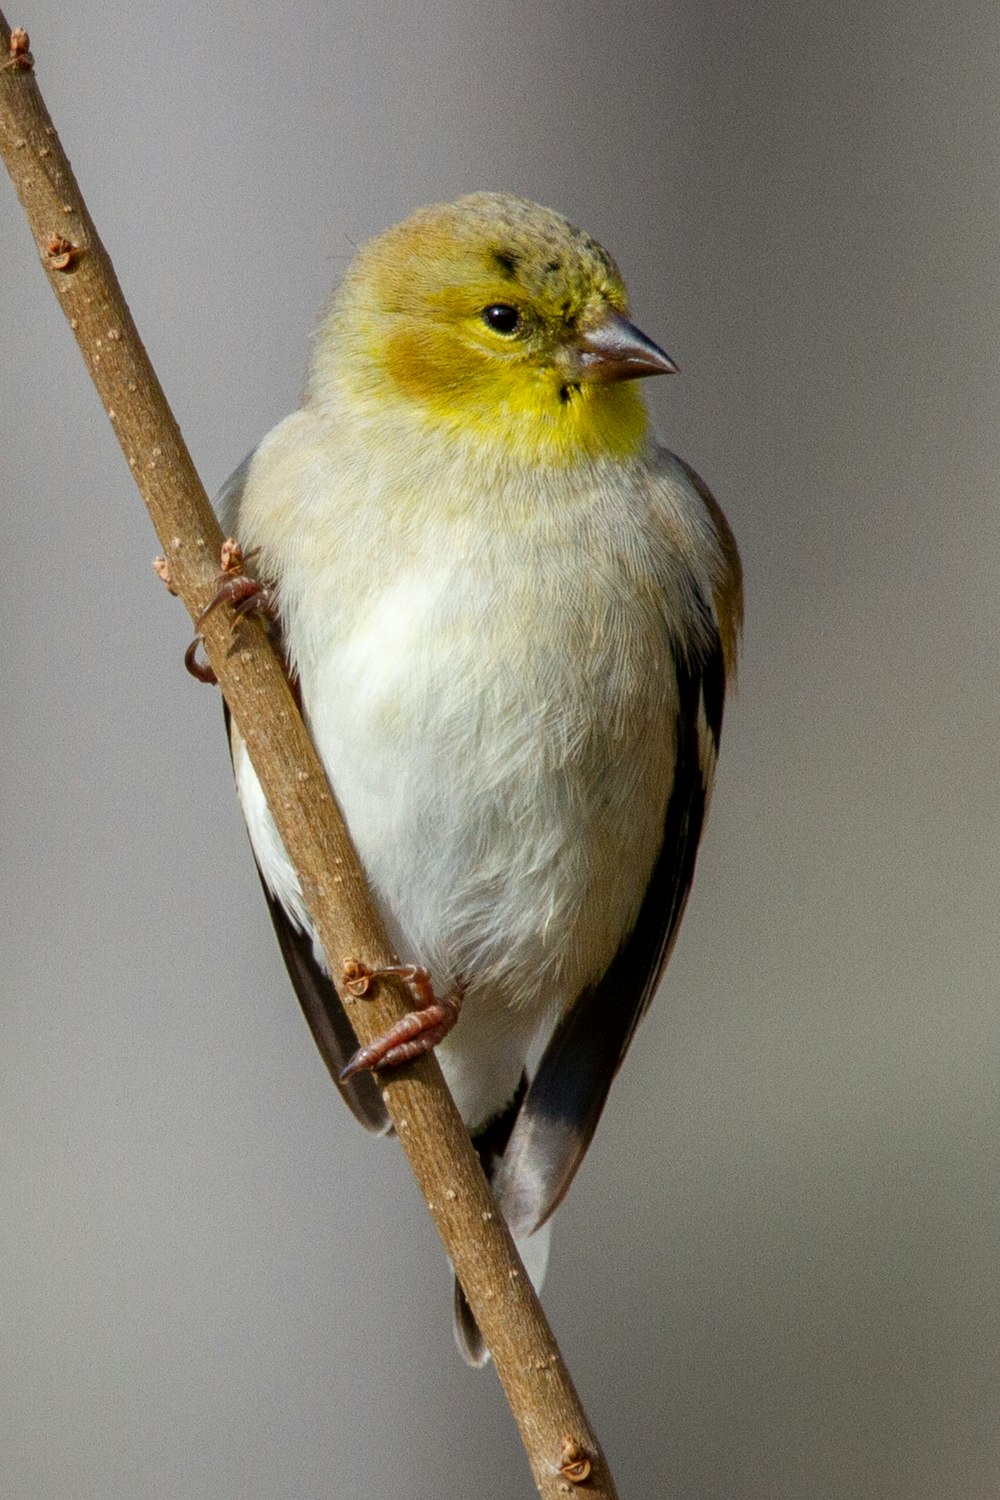 Un pequeño pájaro amarillo y blanco posado en una rama